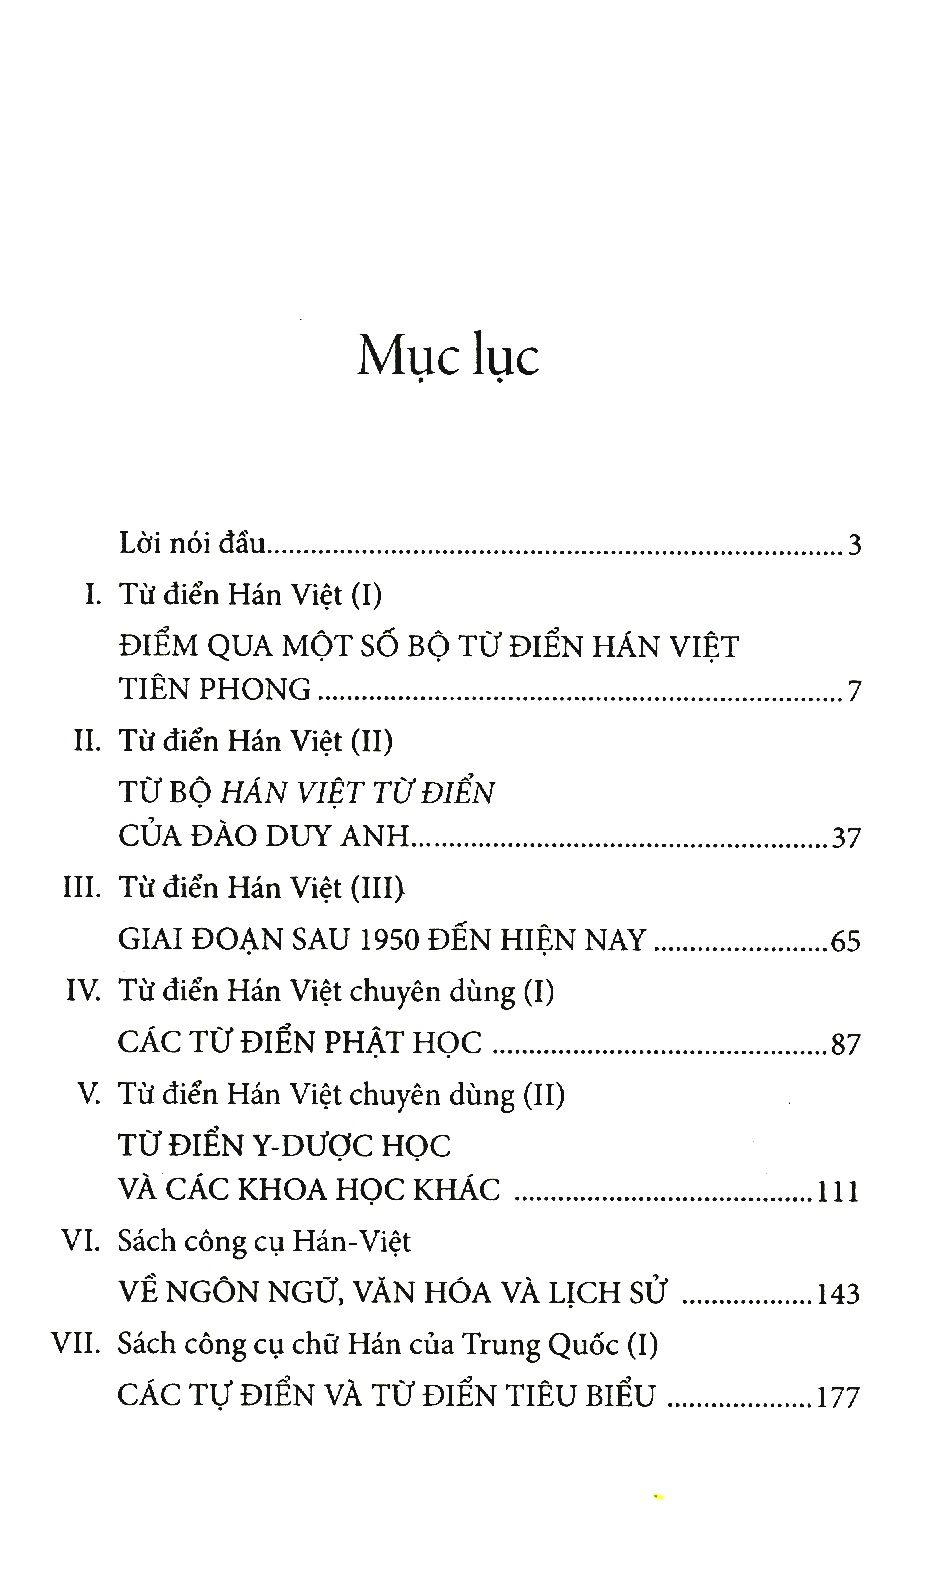 Từ điển - Sách công cụ chữ Hán của Việt Nam và Trung Quốc